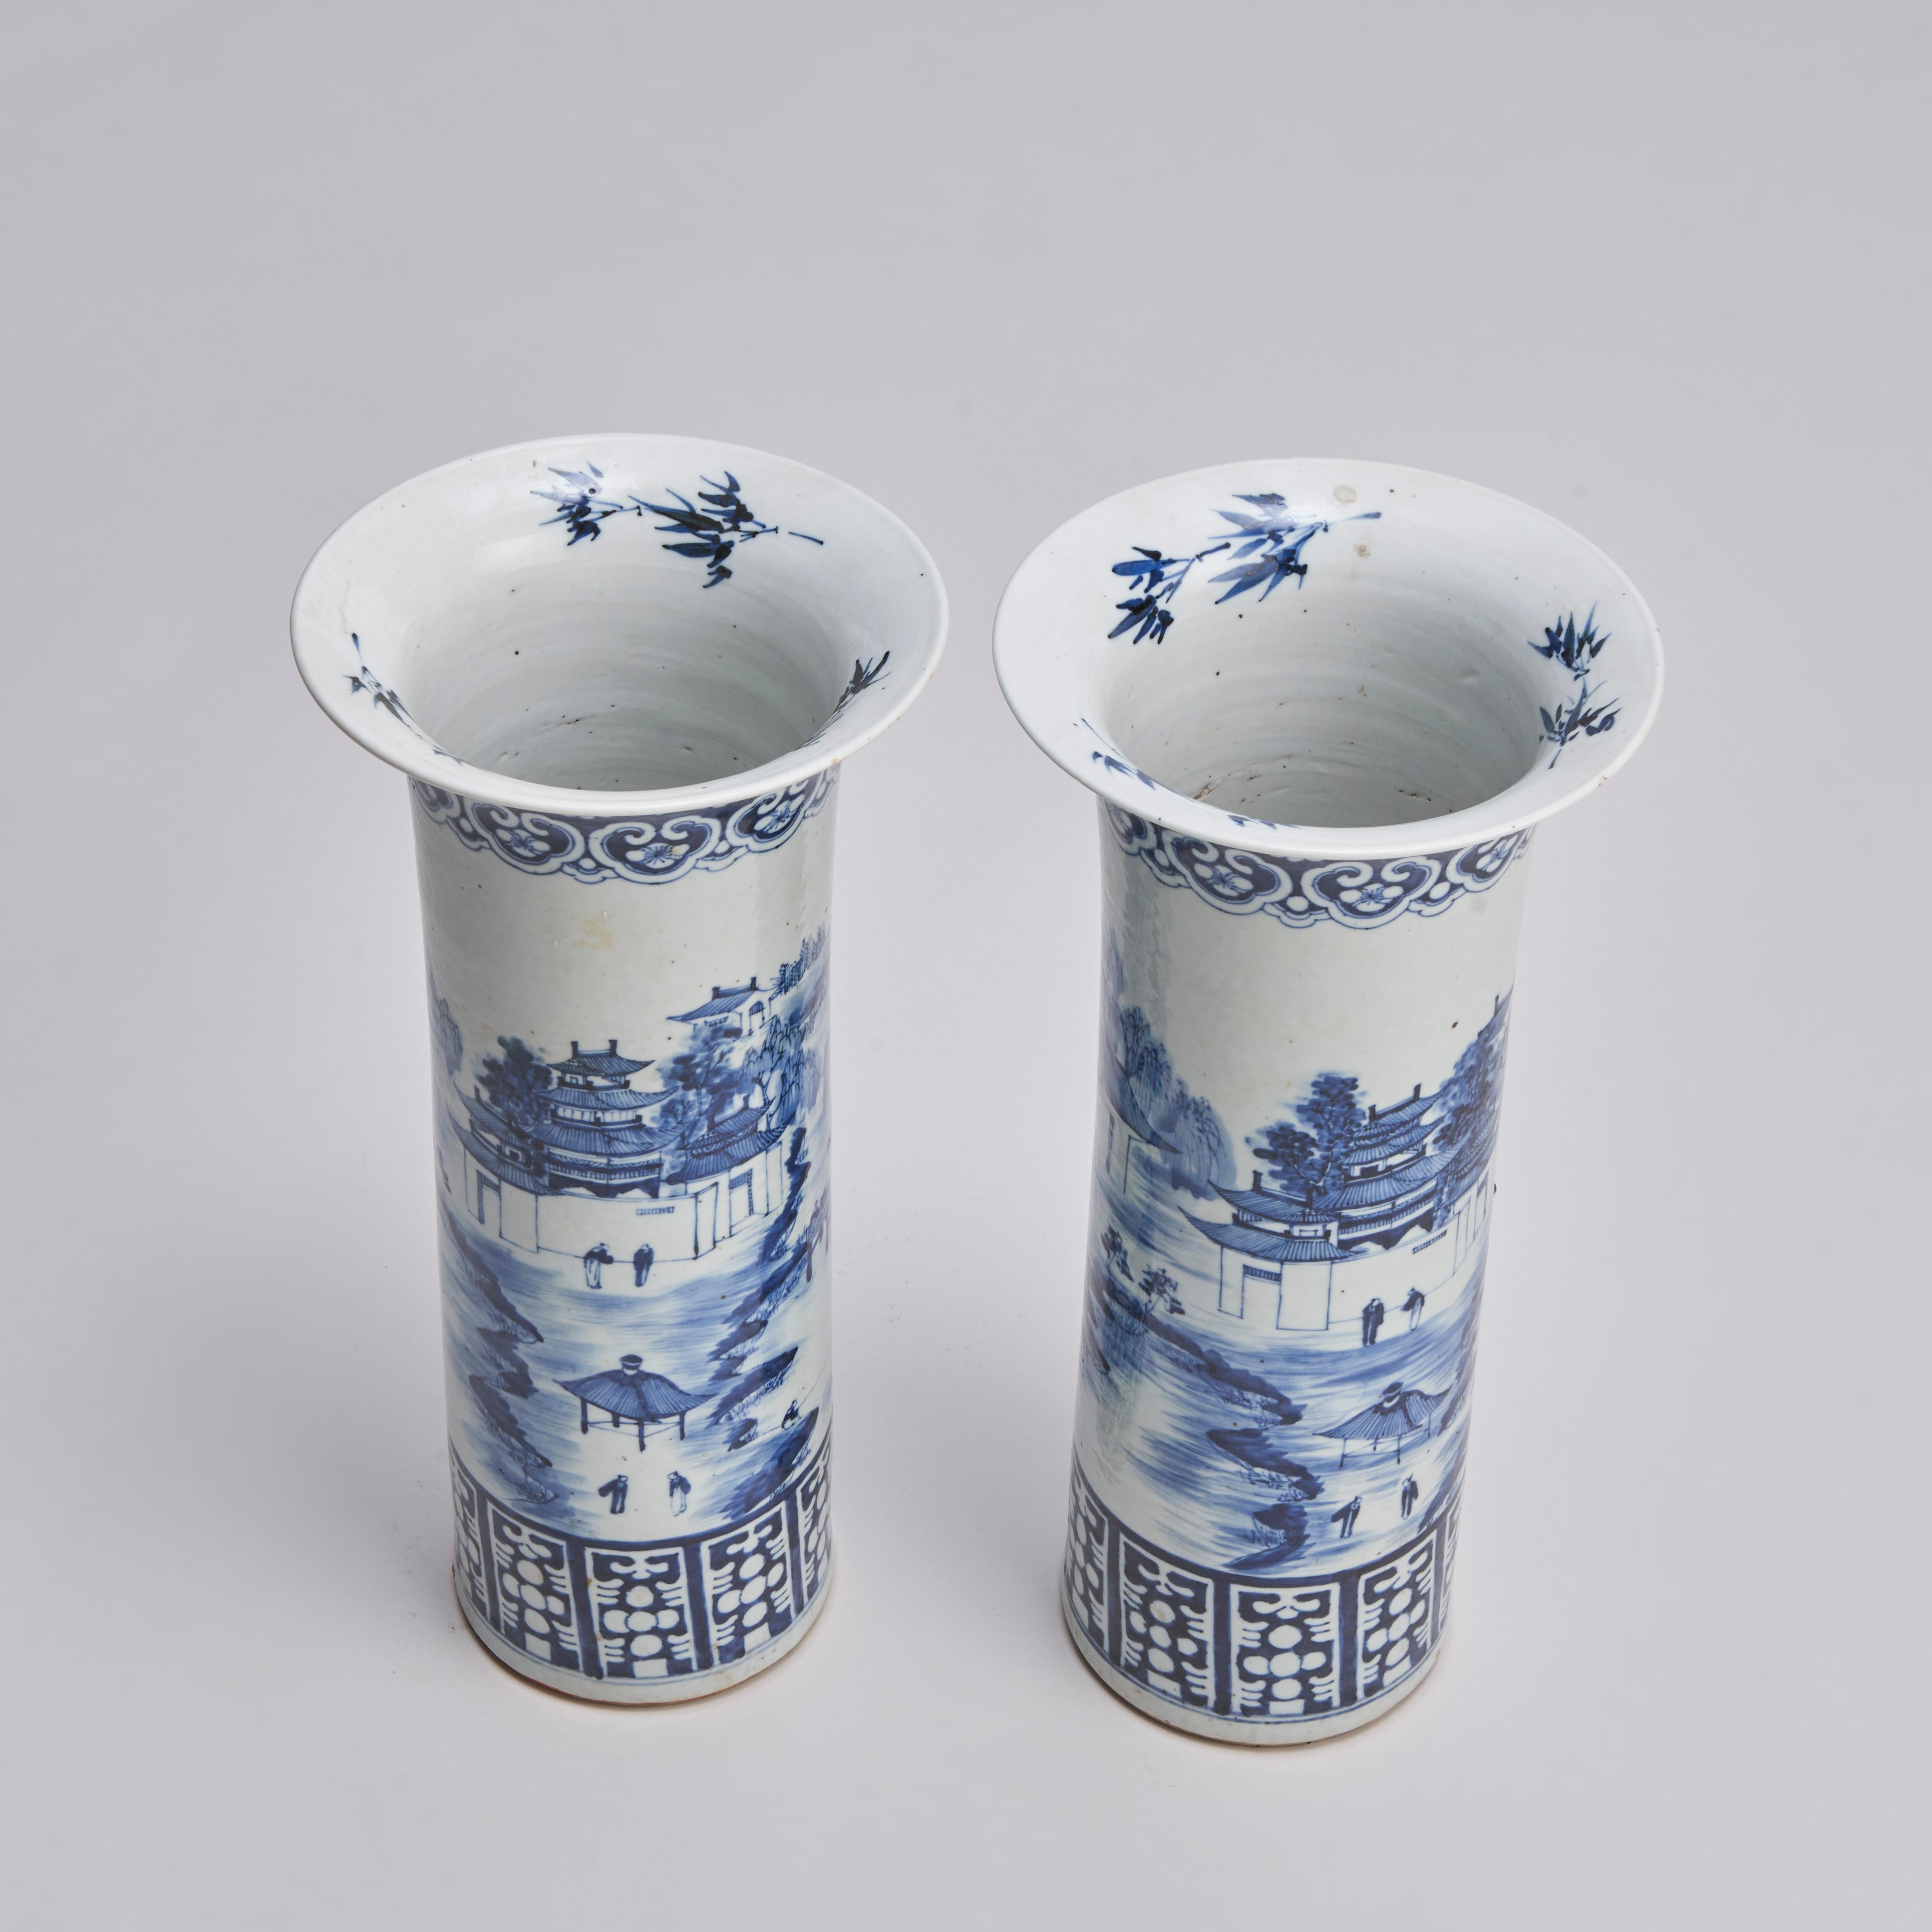 Aus unserer Sammlung von antikem chinesischem Porzellan stammt dieses große Paar blau-weißer Vasen aus dem neunzehnten Jahrhundert.
Die ausgestellten Hälse mit stilisiertem Bambuslaub auf der Innenseite. Die Hauptteile der Vasen zeigen idyllische